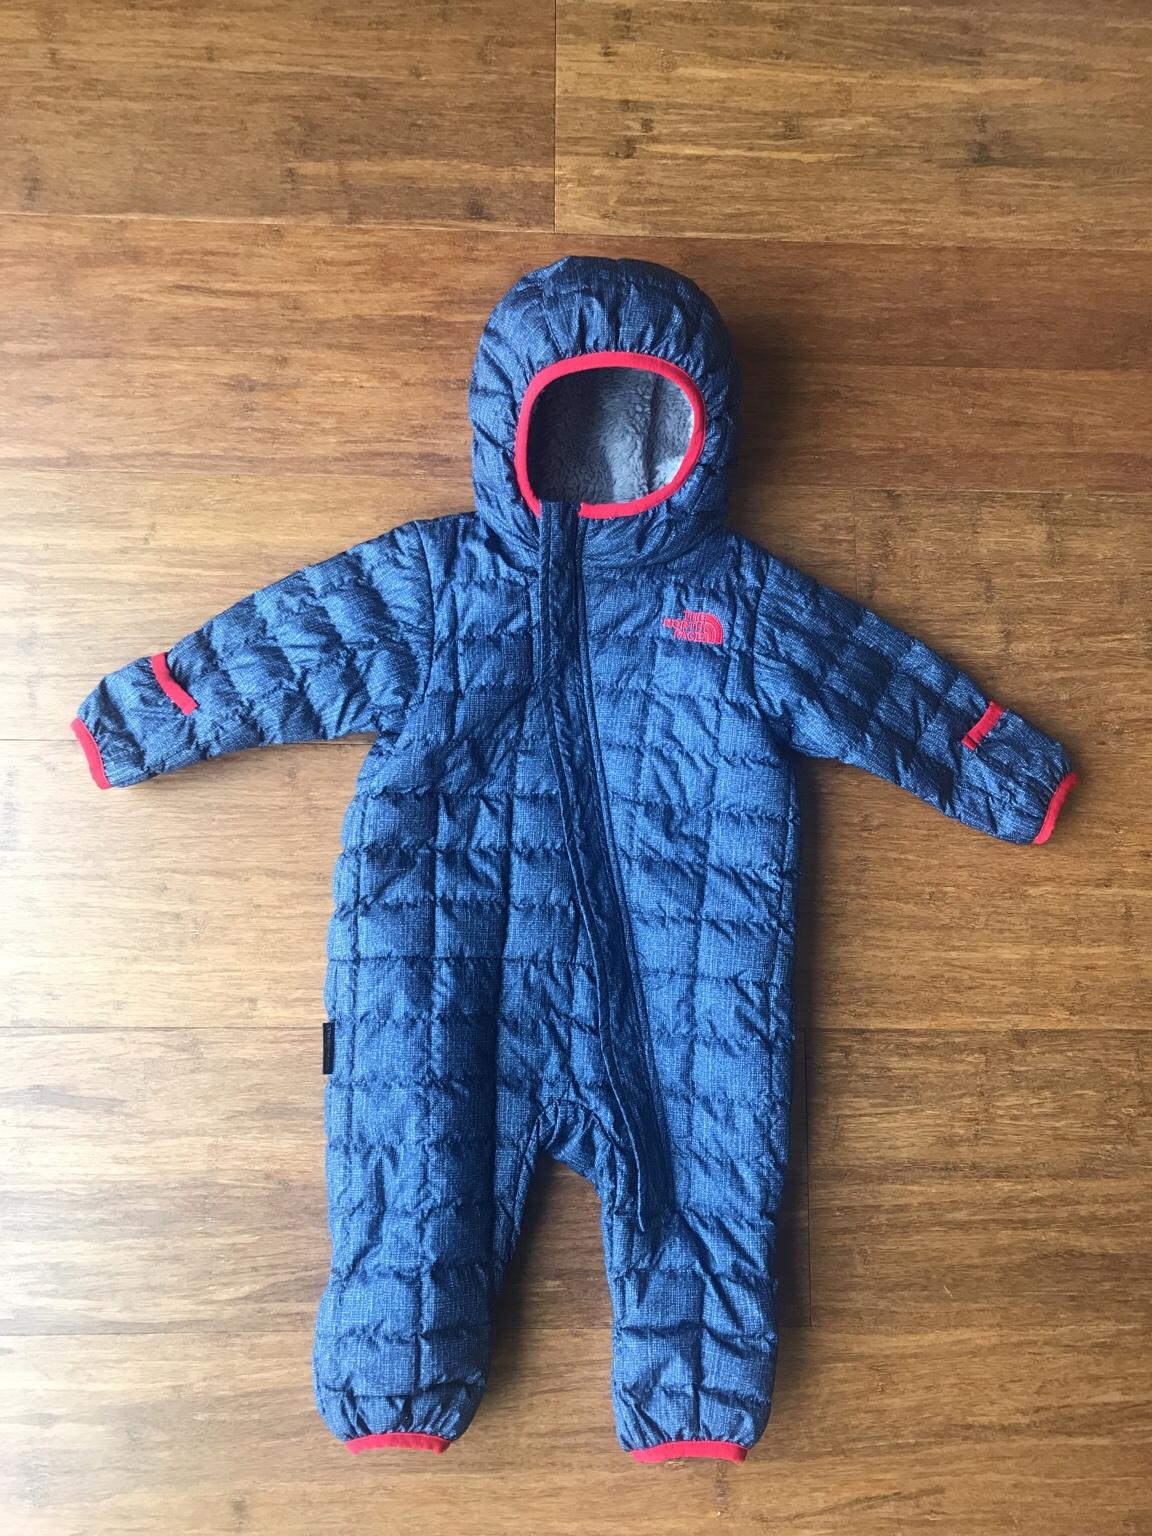 north face infant snowsuit sale